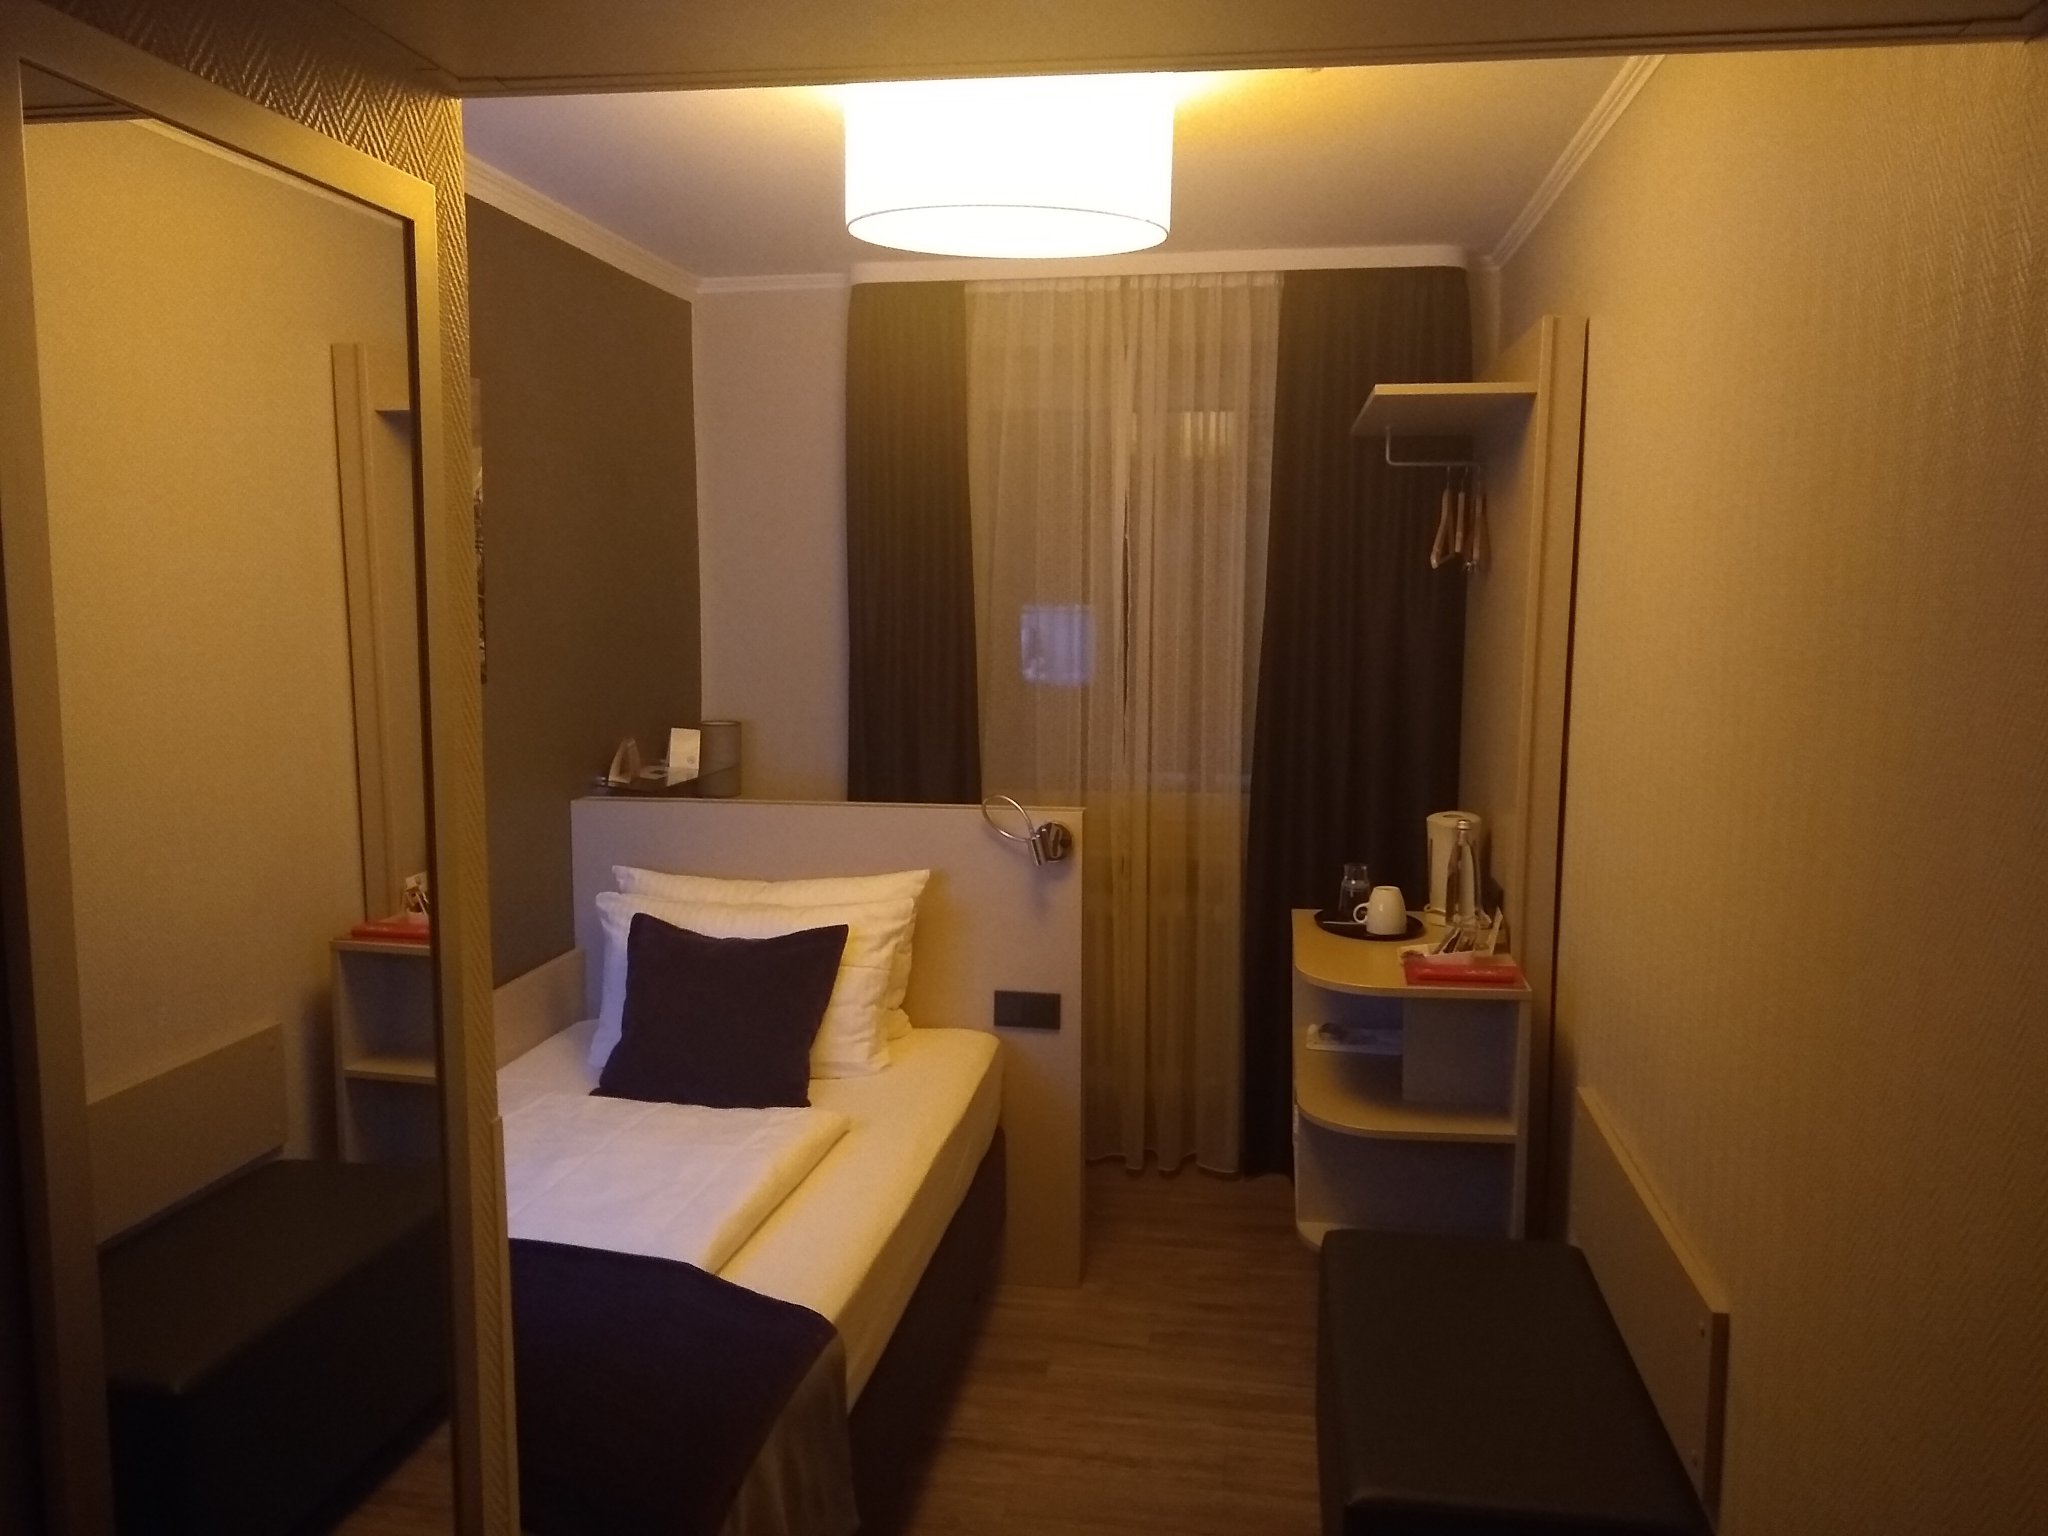 Hotel room in Frankfurt am Main